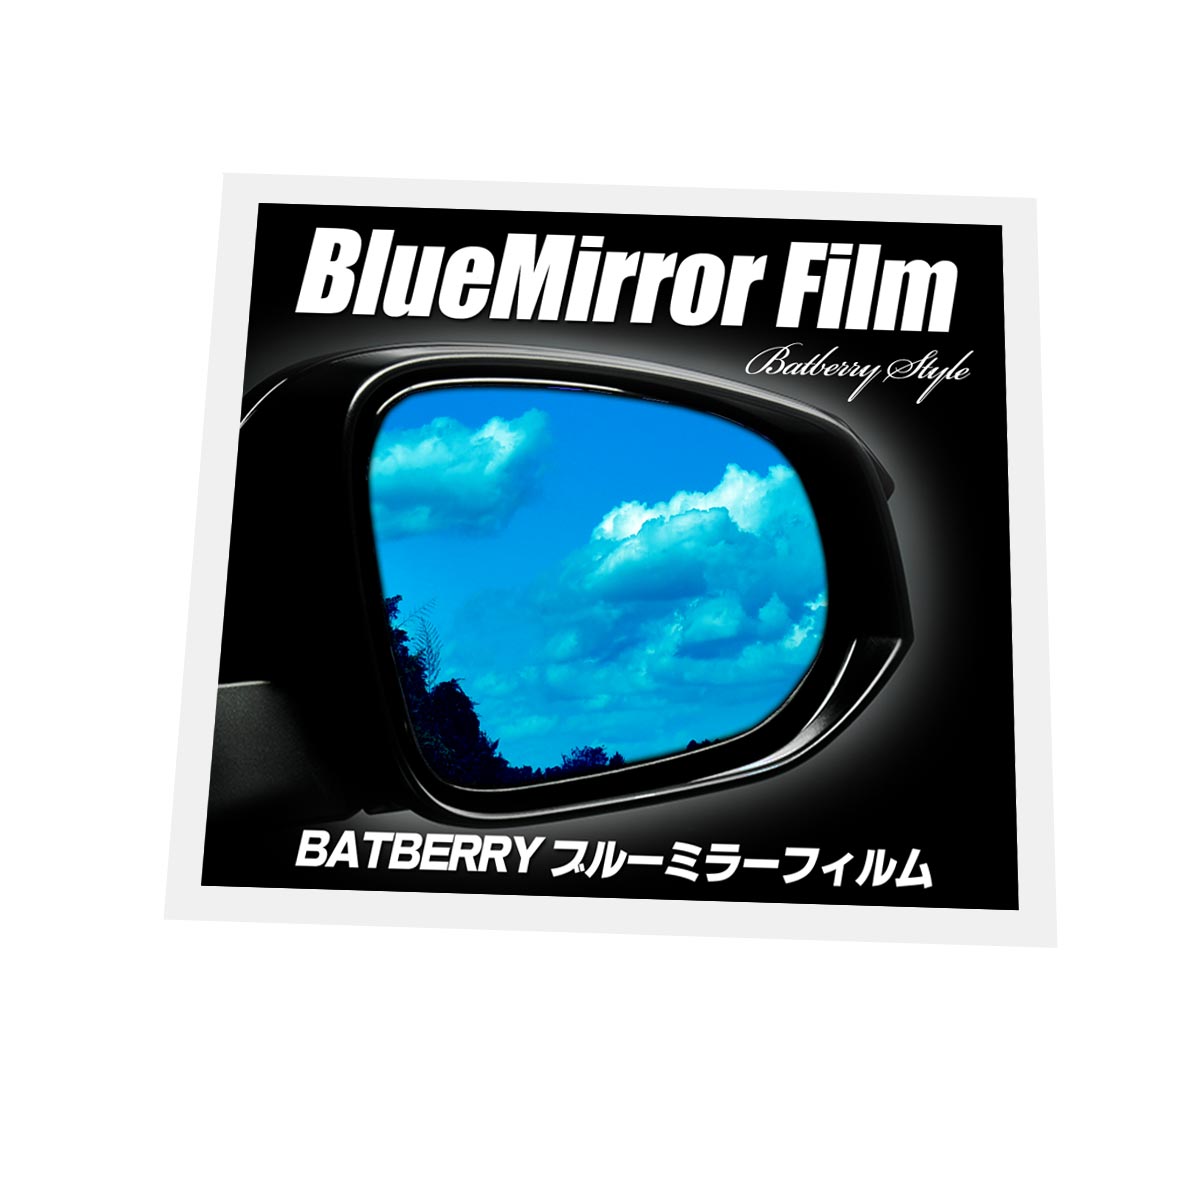 BATBERRY ブルーミラーフィルム スズキ アルトバン HA36V用(R2年10月からのVPグレード対応) 左右セット